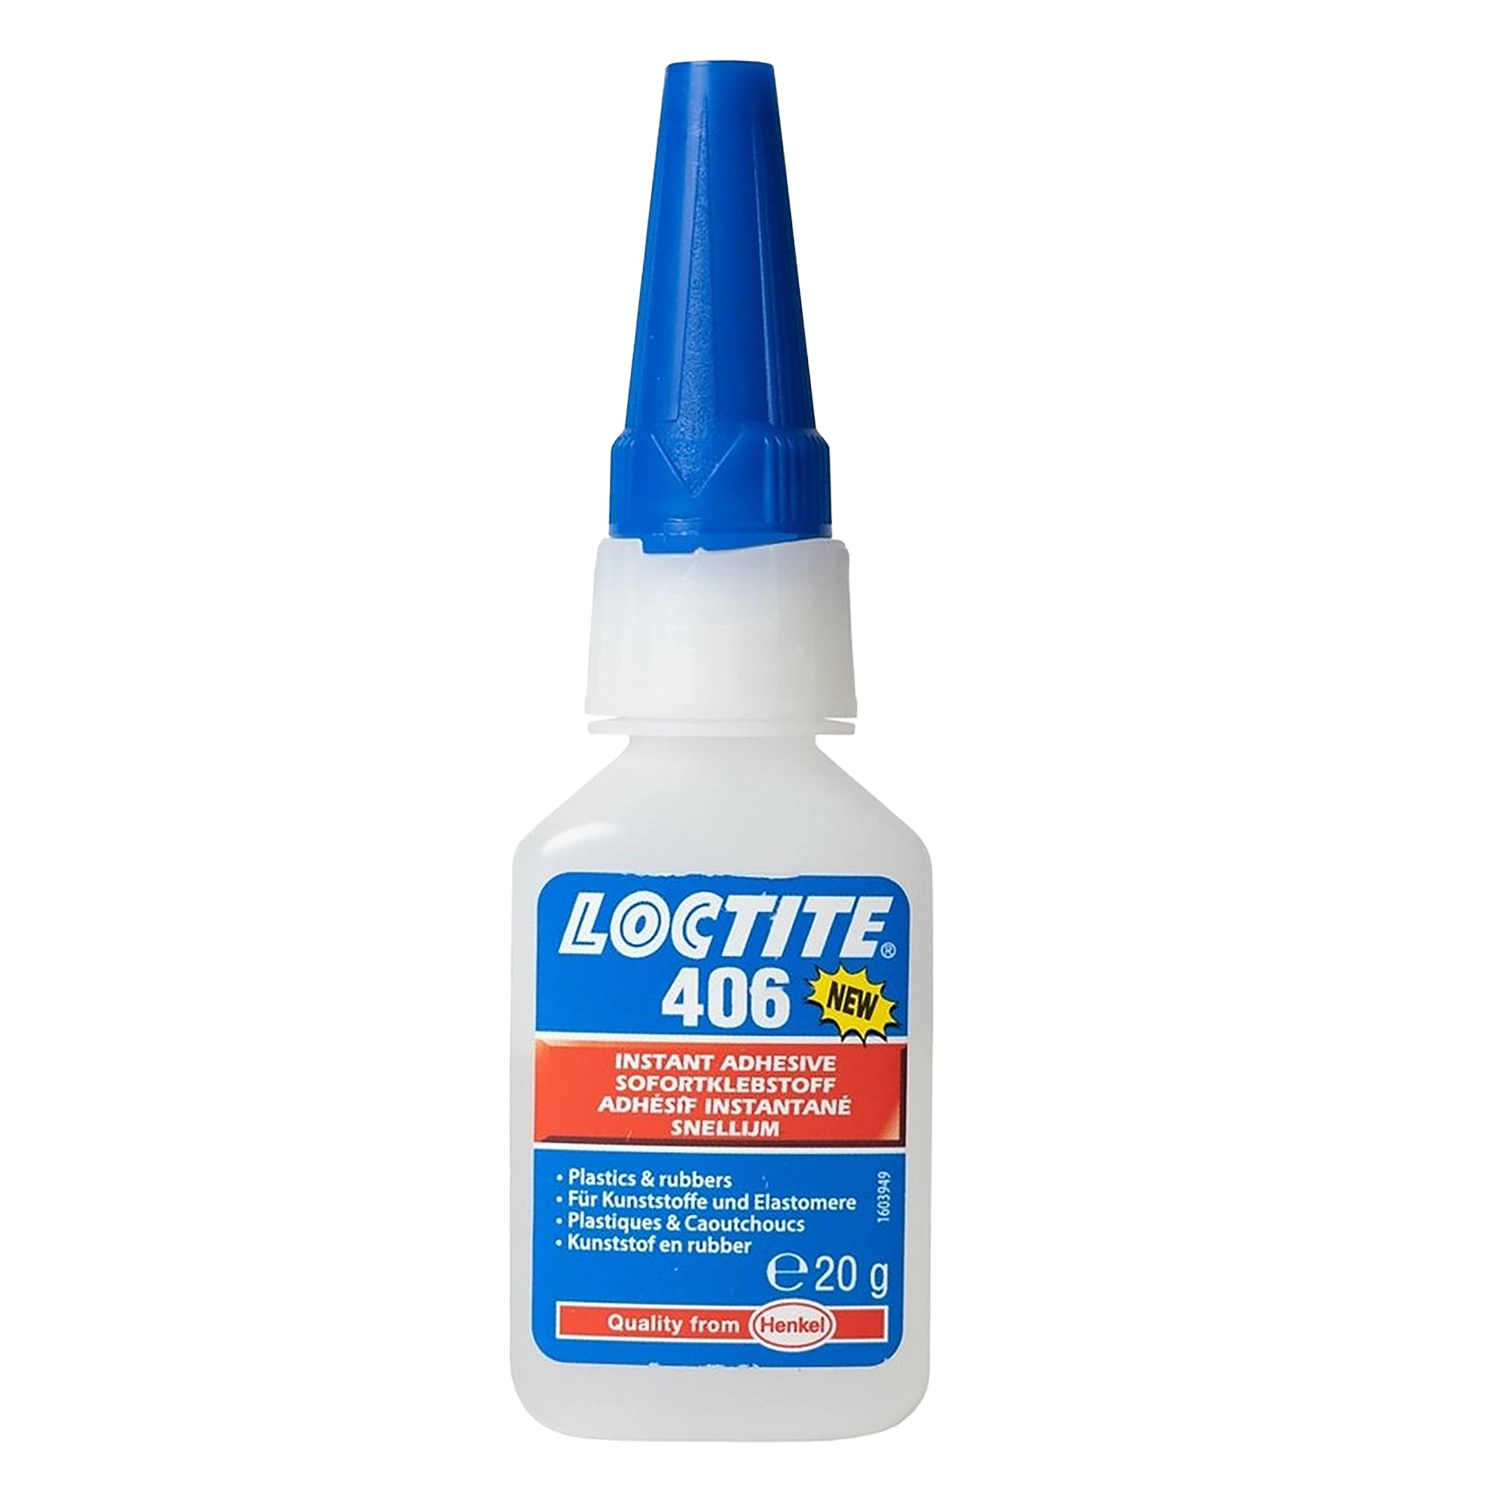 Loctite 406 instantlijm (20 gram)  Snelle, sterke verbinding van diverse kunststoffen en rubbers.